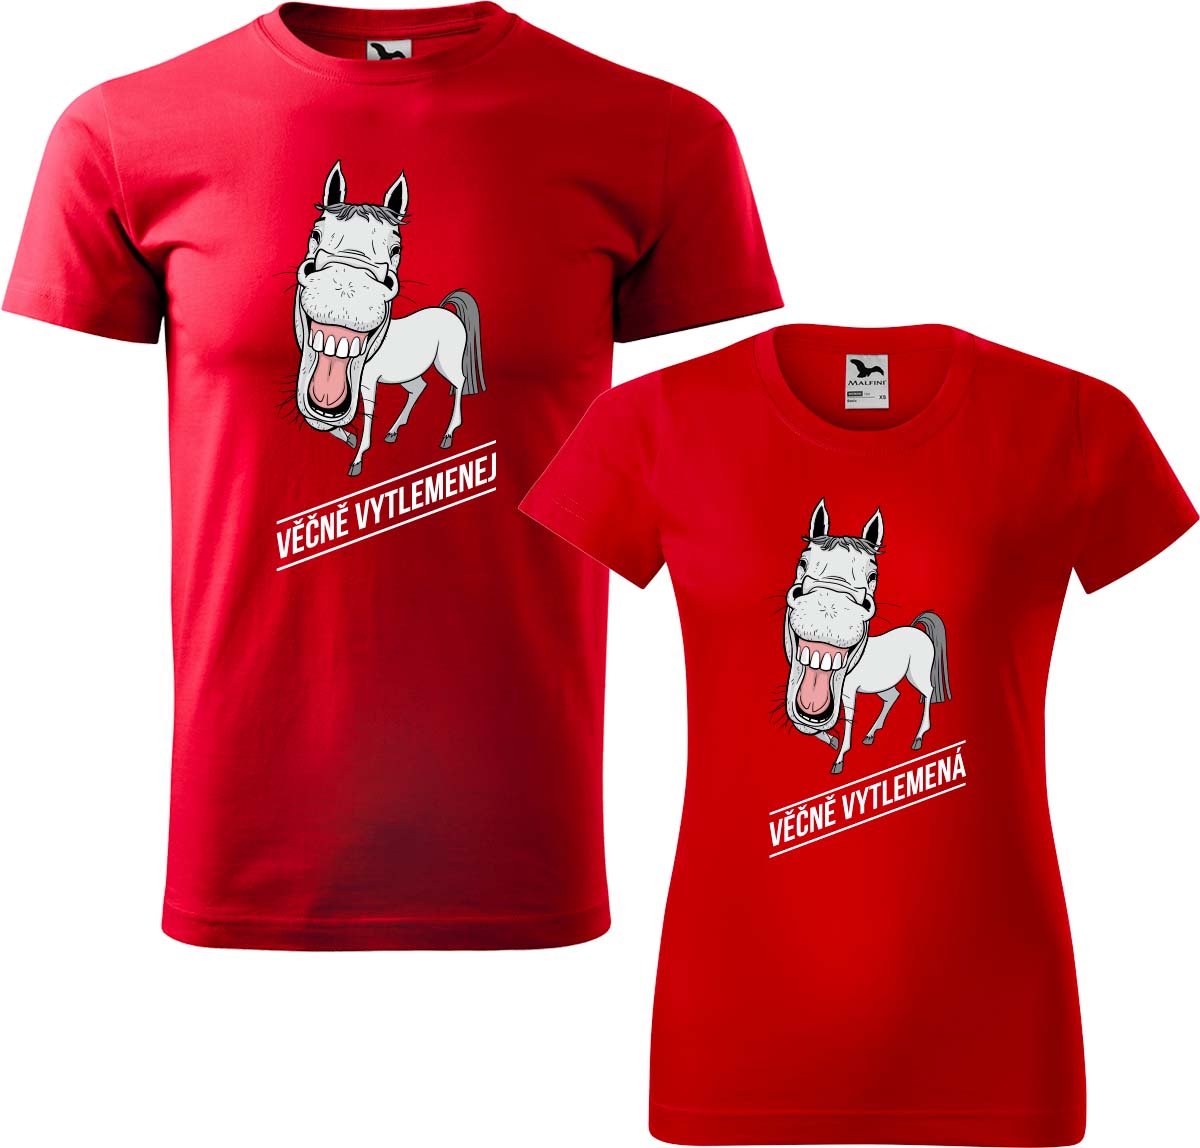 Trička pro páry - Věčně vytlemenej a věčně vytlemená Barva: Červená (07), Velikost dámské tričko: L, Velikost pánské tričko: L